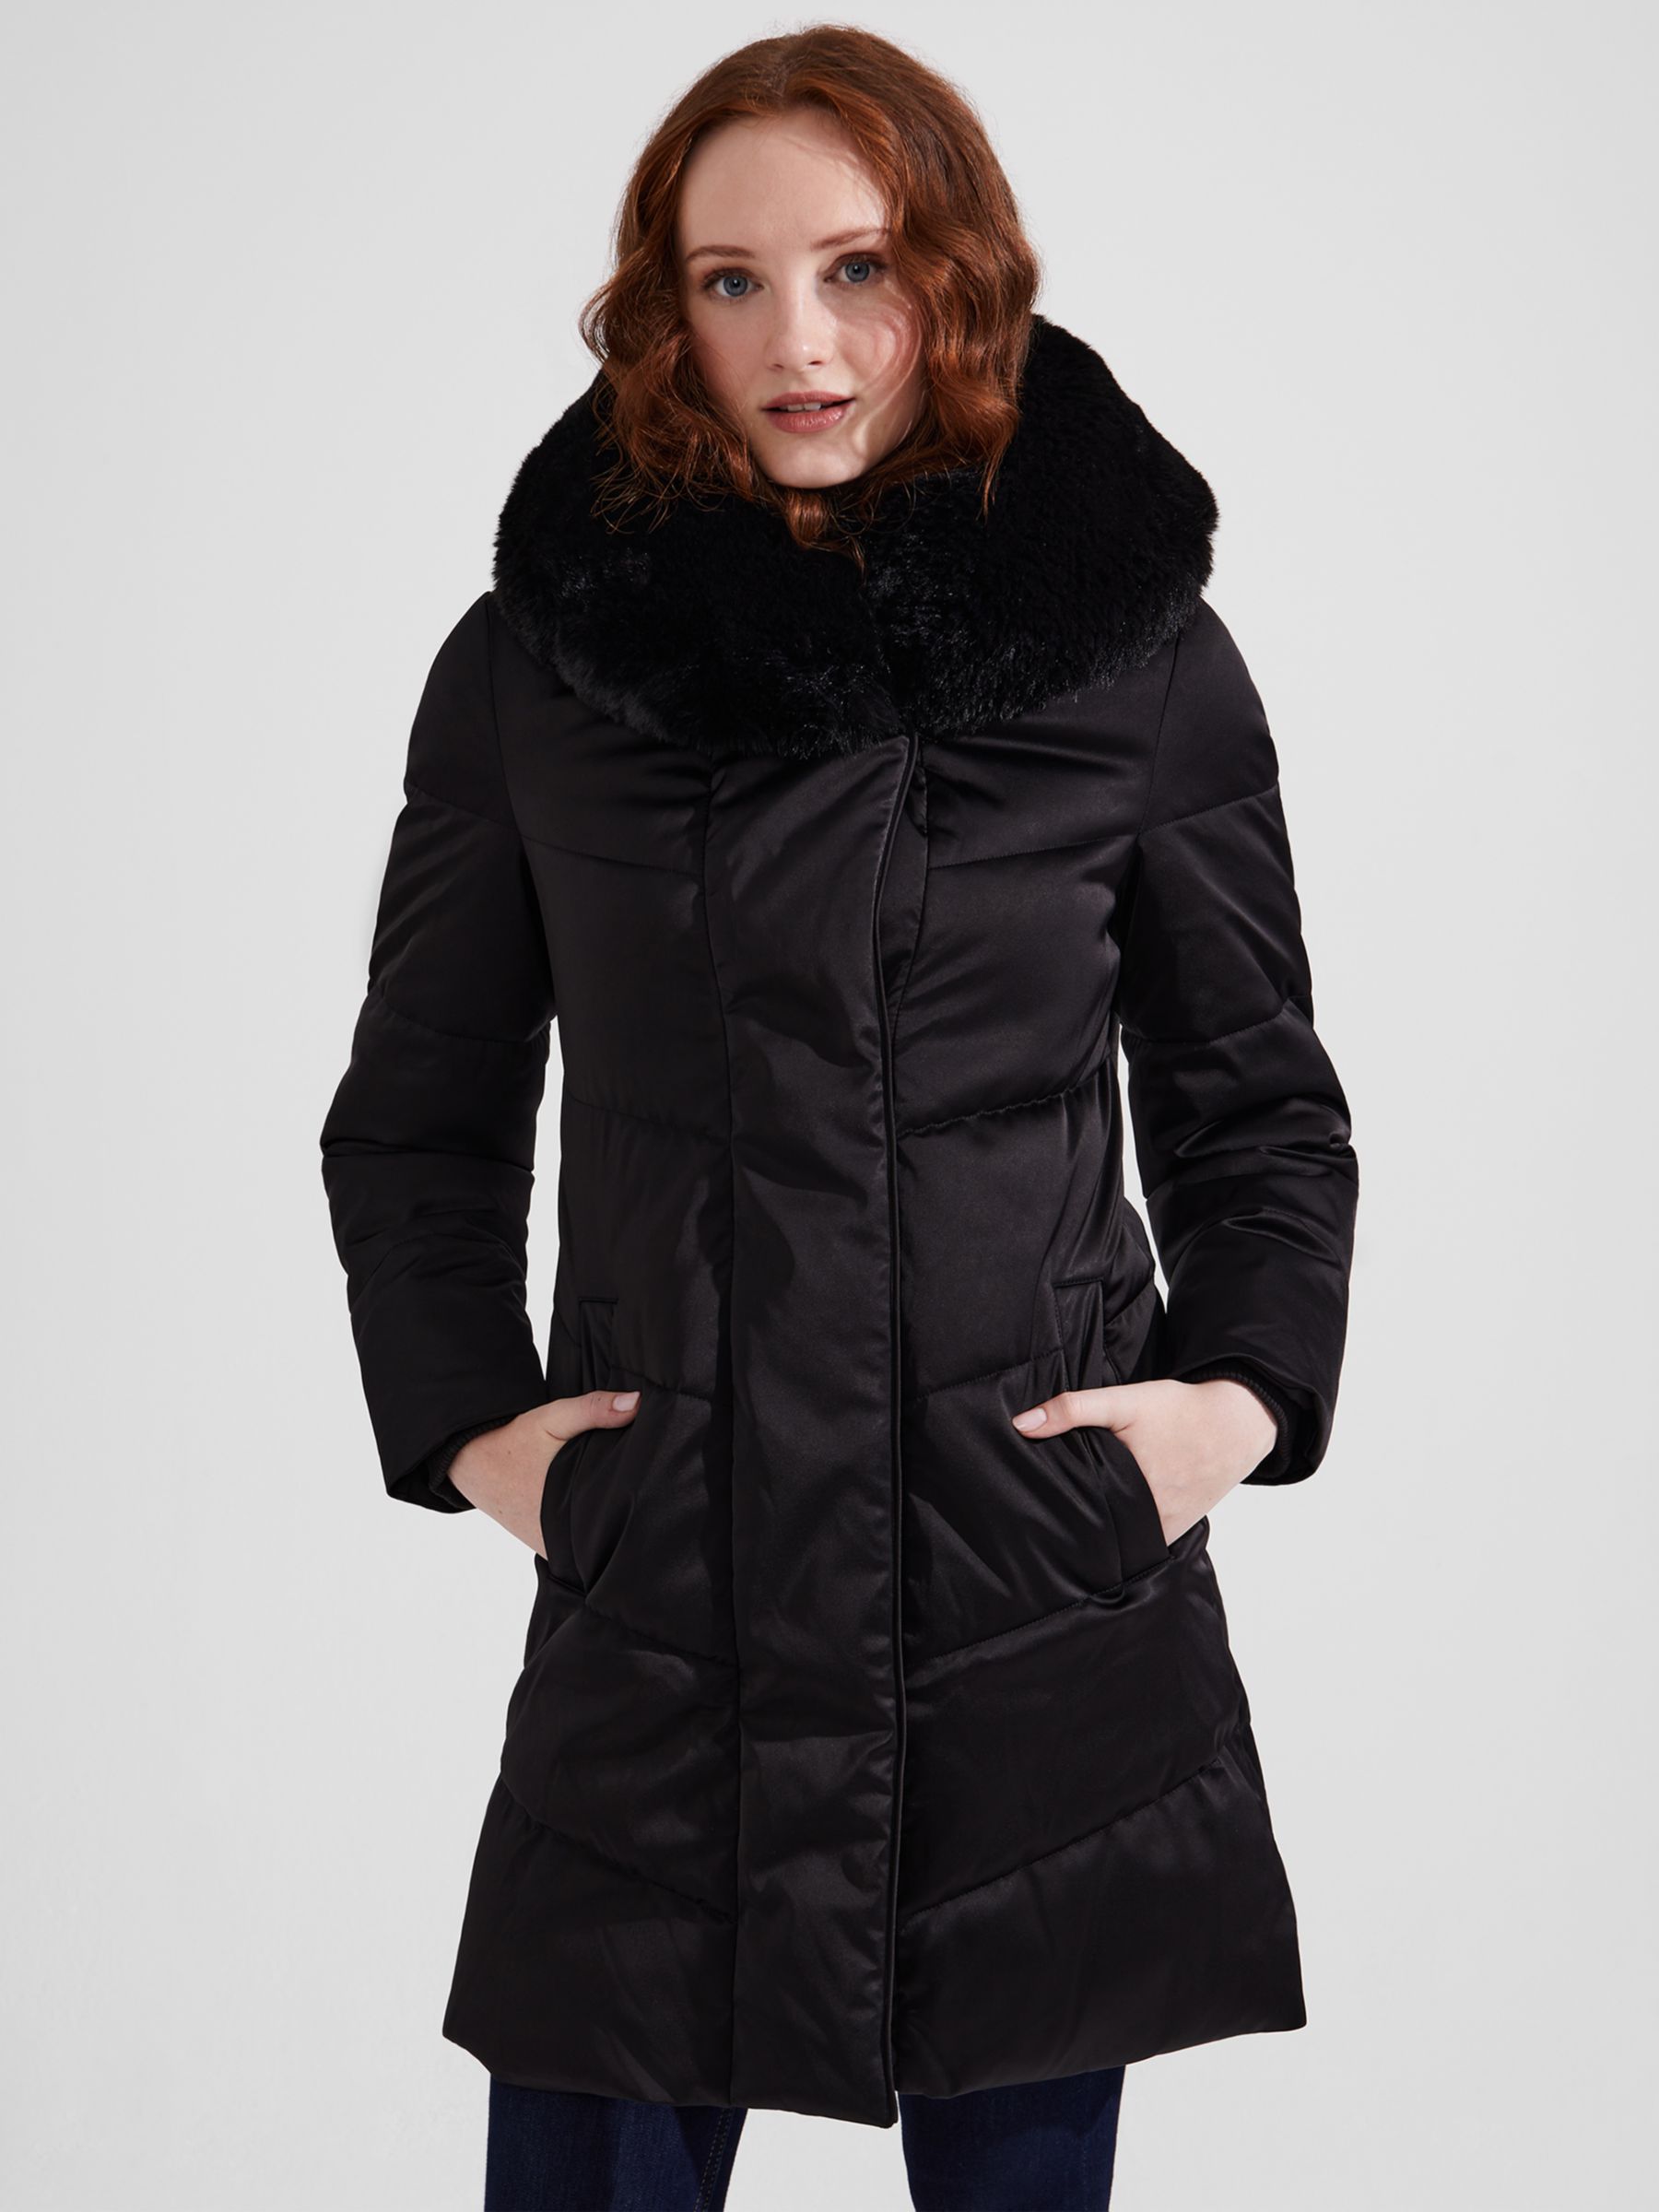 Hobbs Serena Puffer Coat, Black at John Lewis & Partners